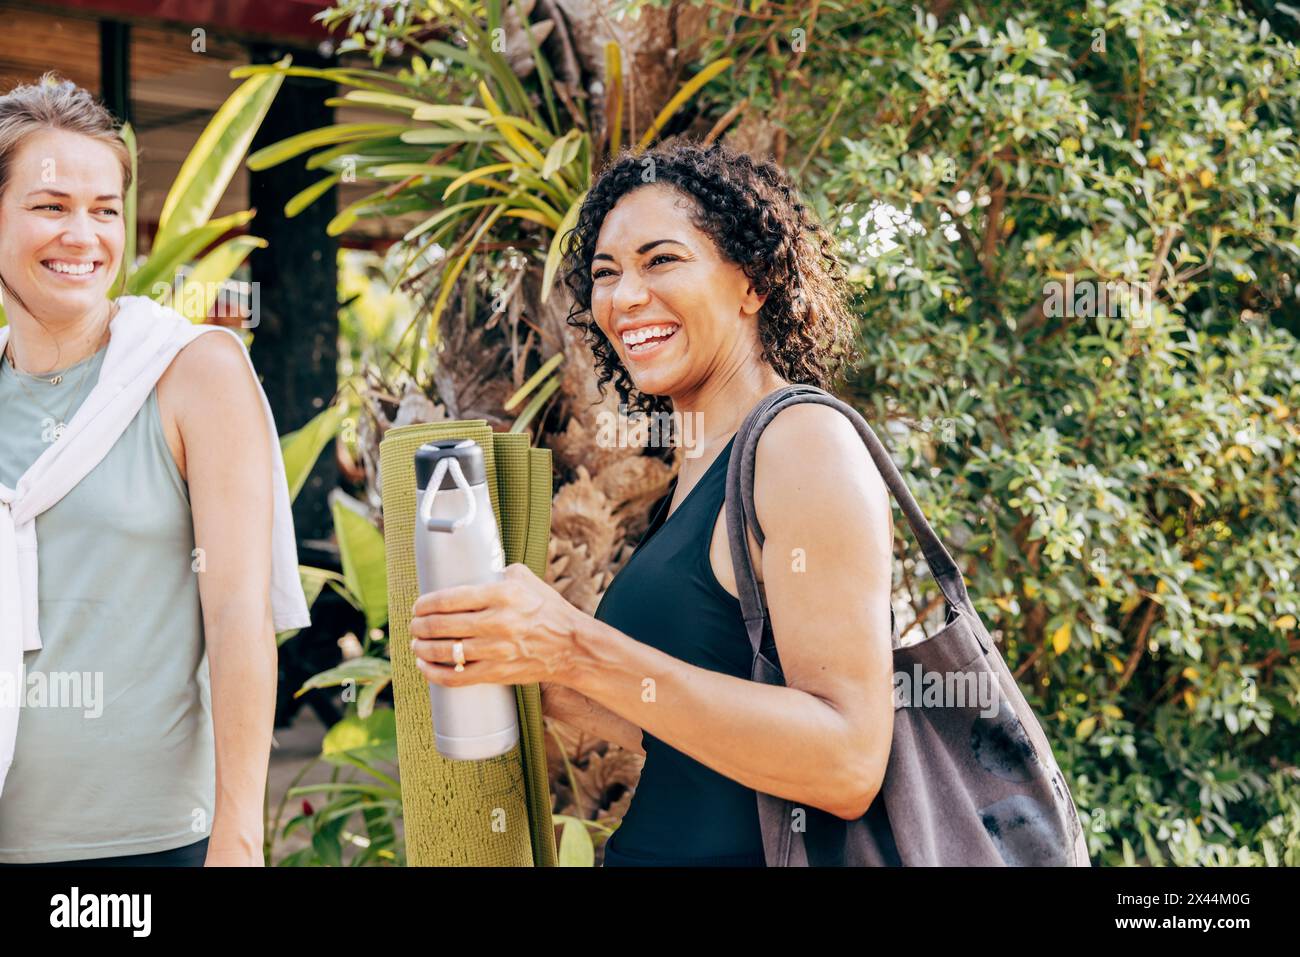 Femme heureuse tenant une bouteille d'eau tout en se tenant debout près d'une amie féminine à la station de bien-être Banque D'Images